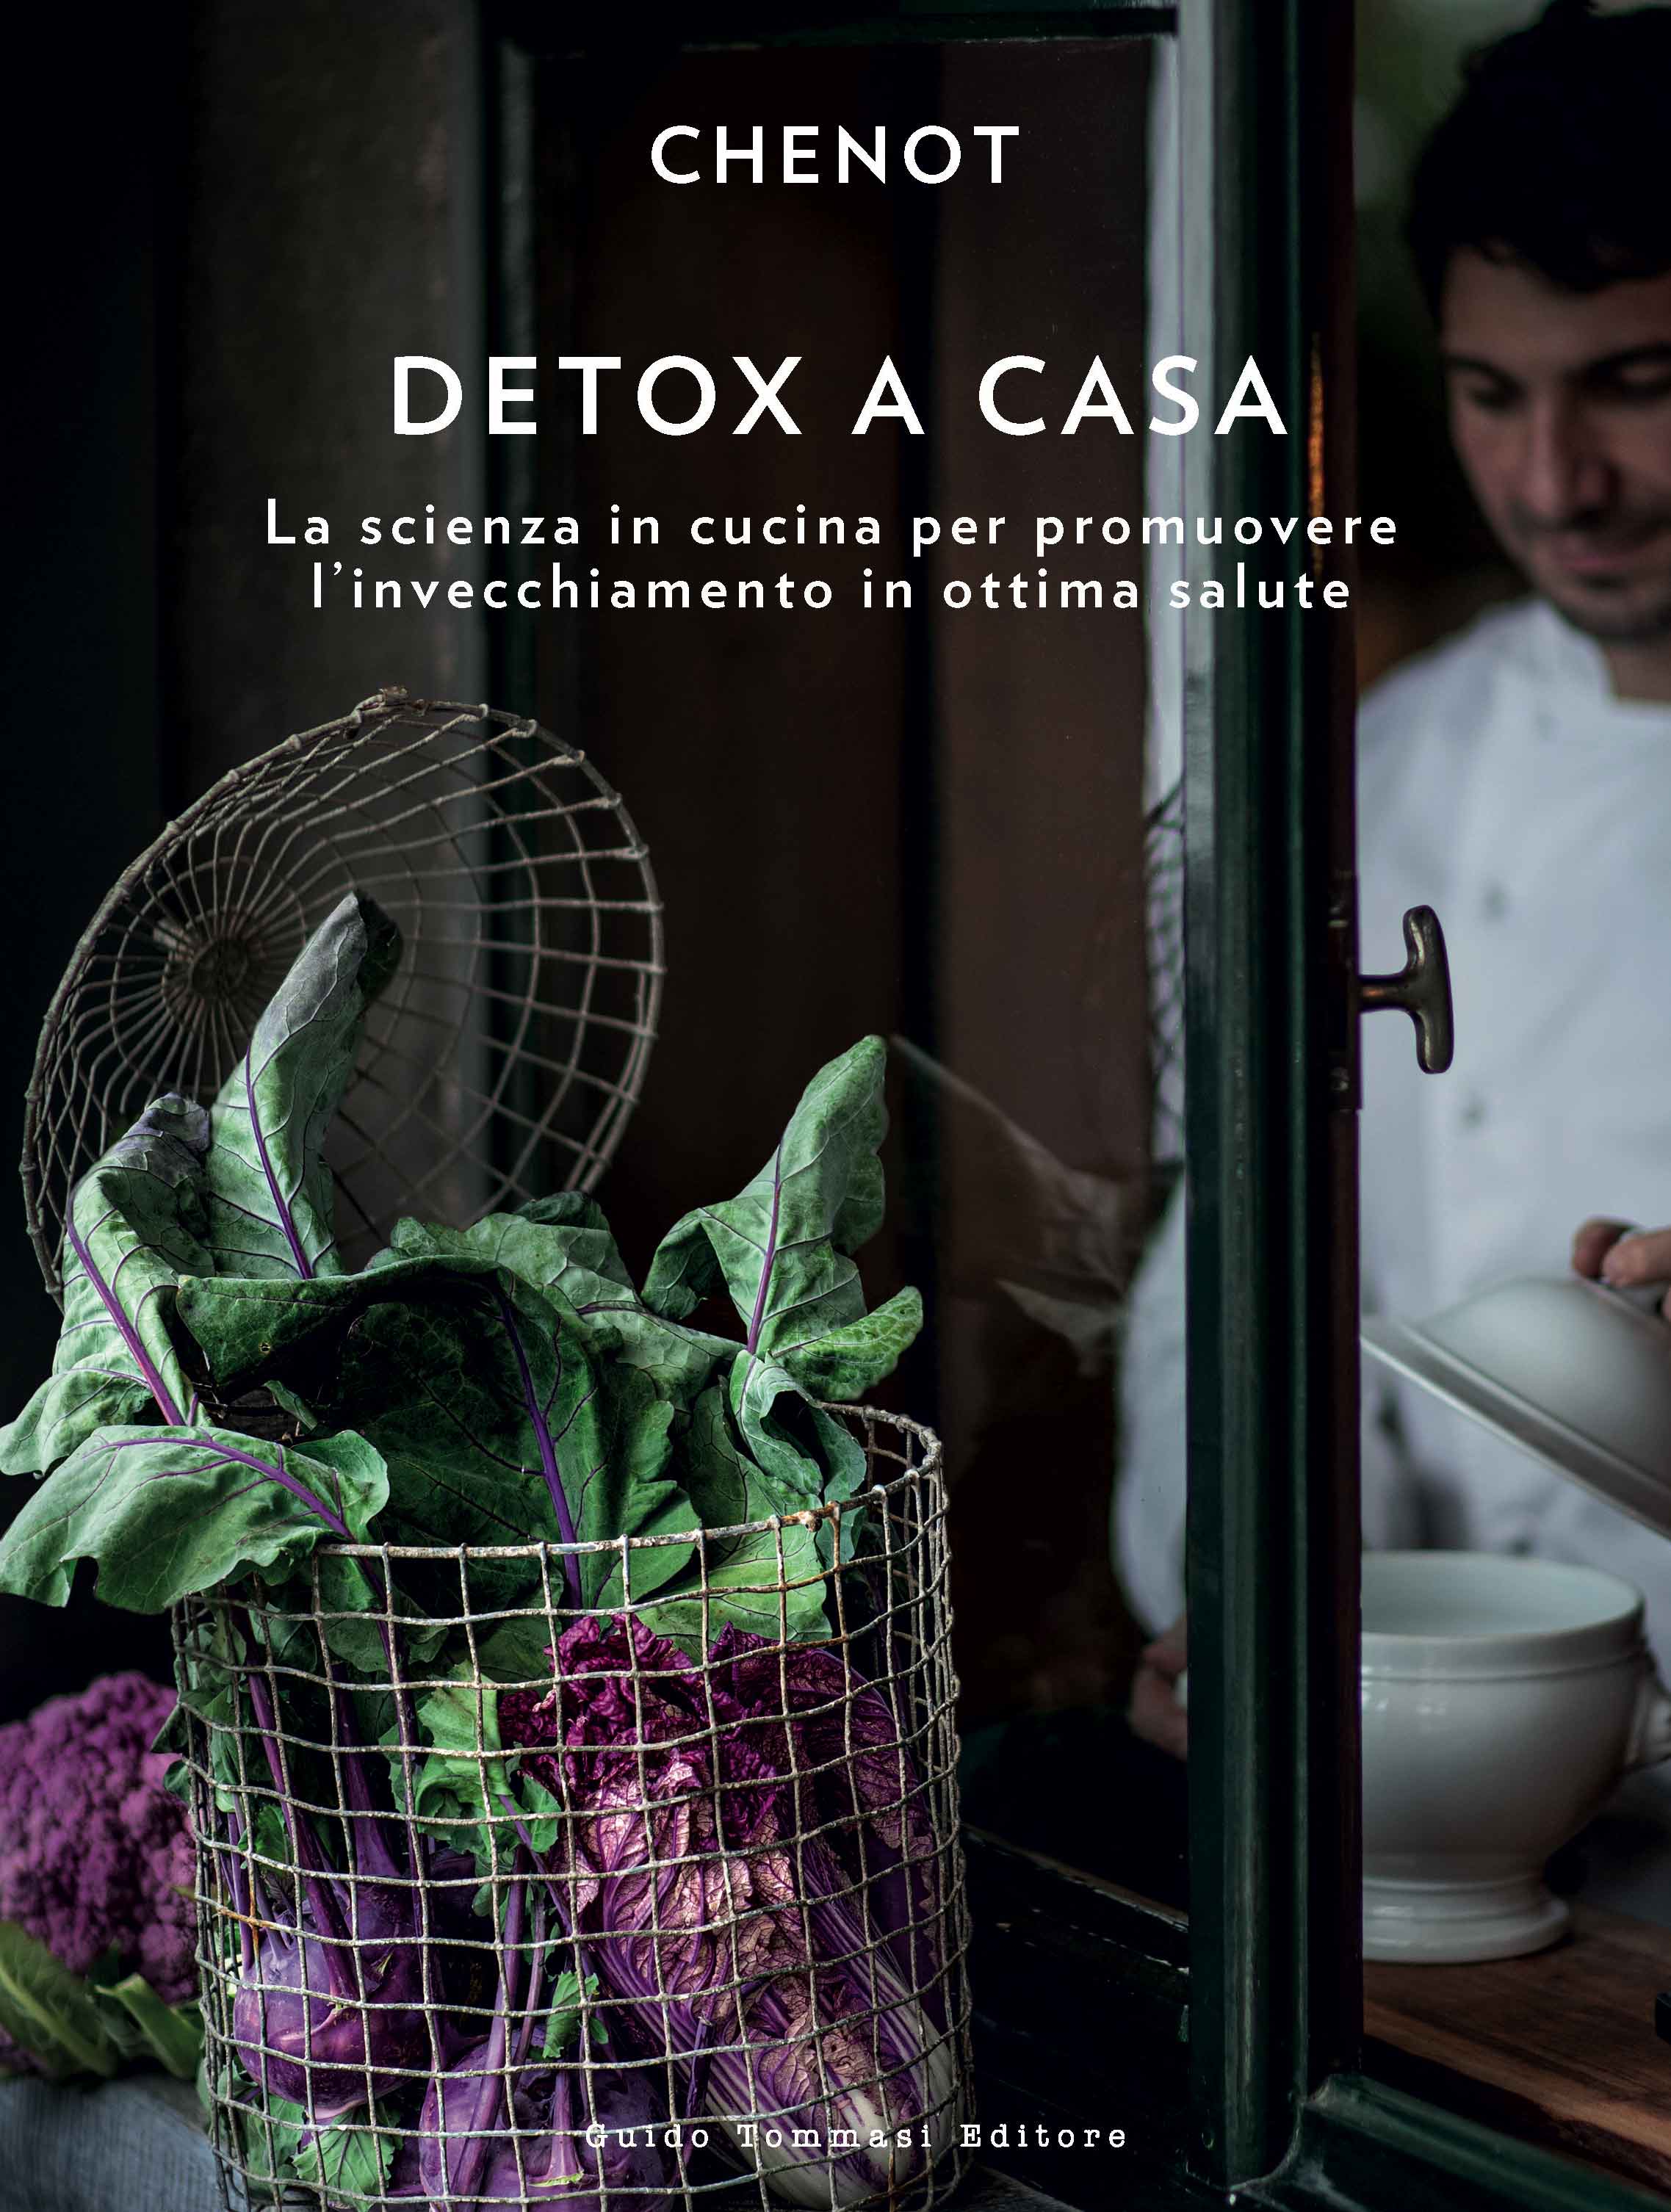 Chenot - Detox a casa - Guido Tommasi Editore